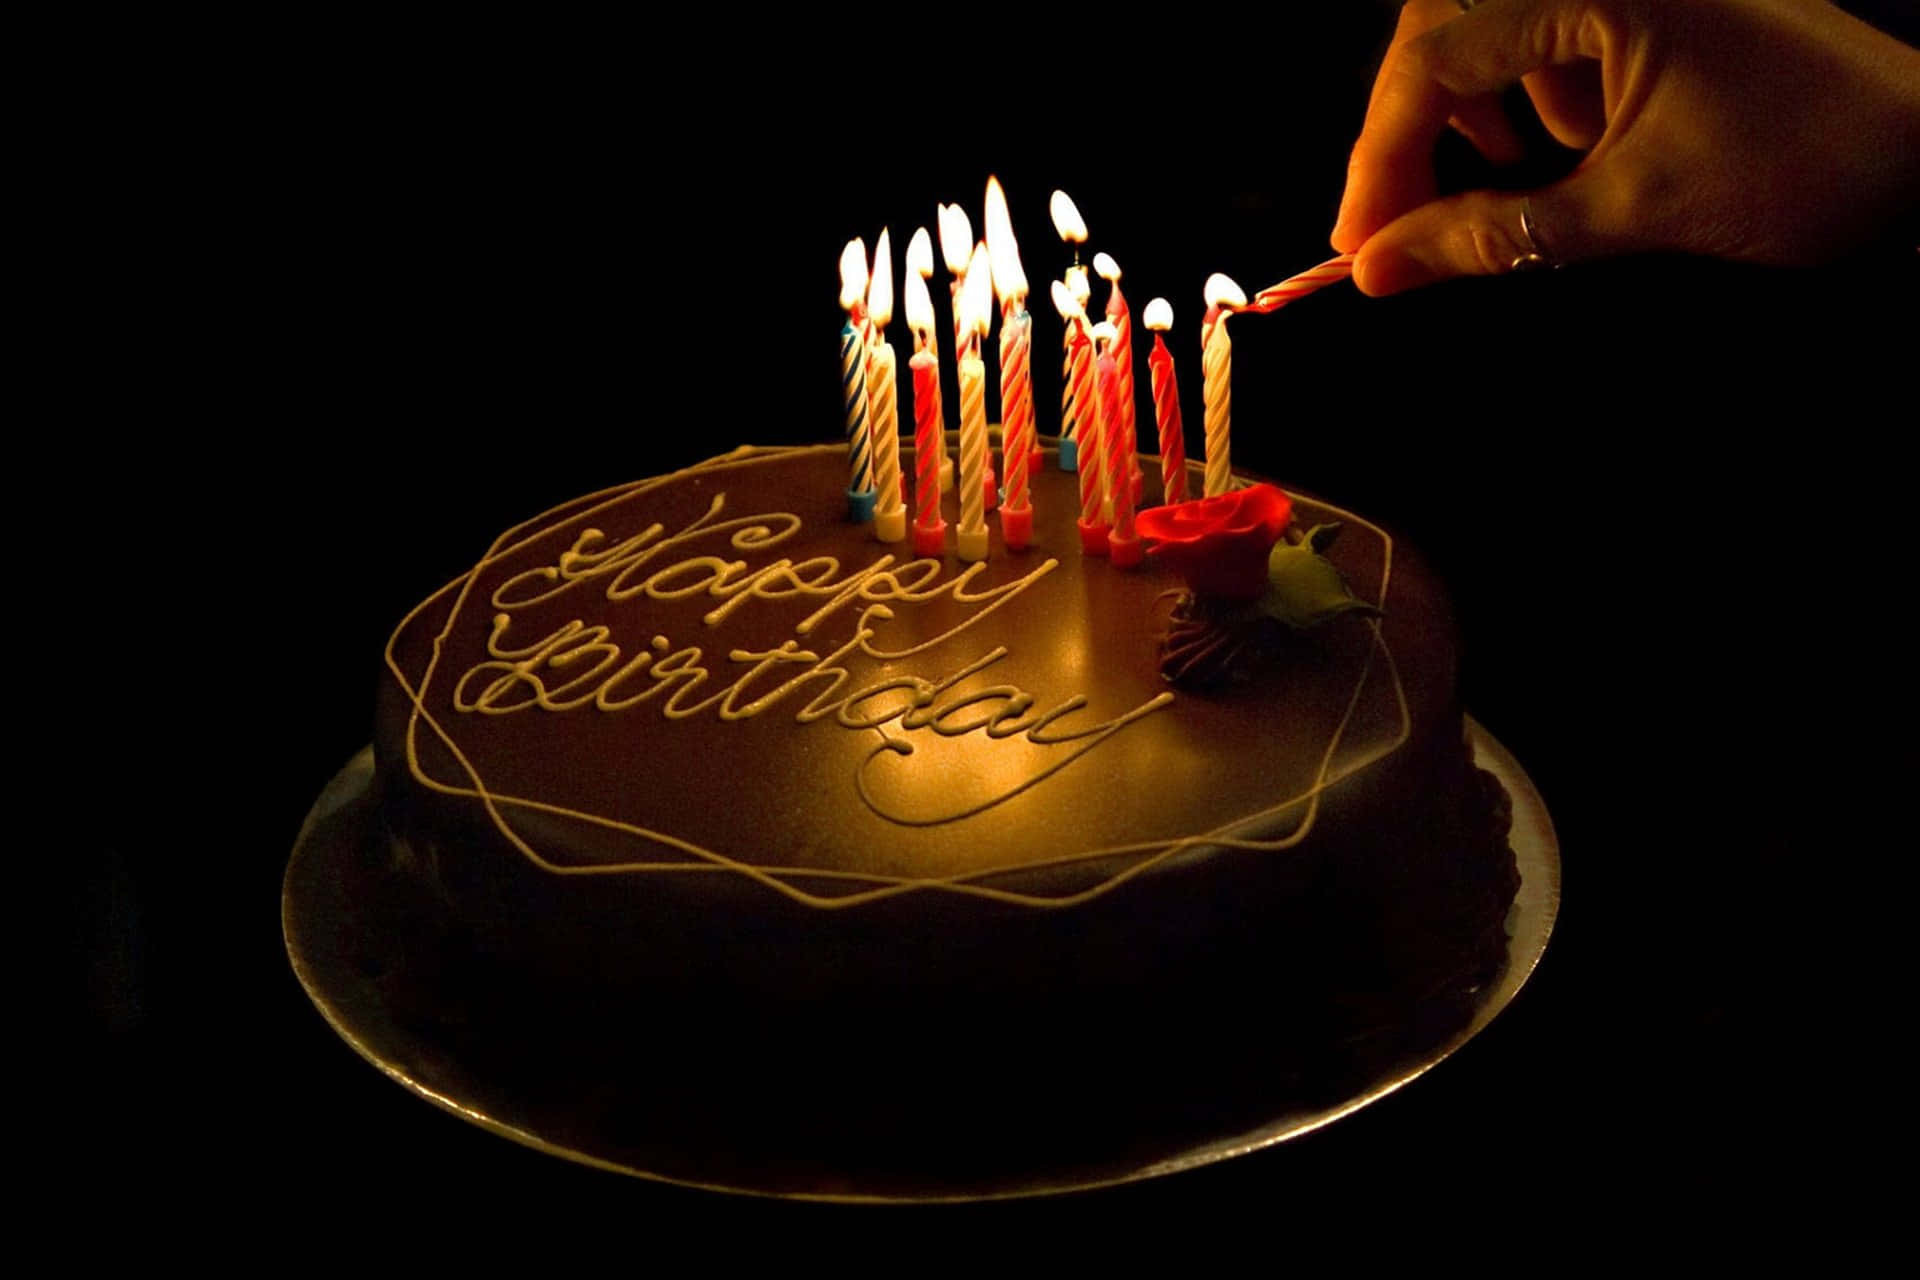 Celebrandocon Una Deliziosa Torta Di Compleanno Al Cioccolato